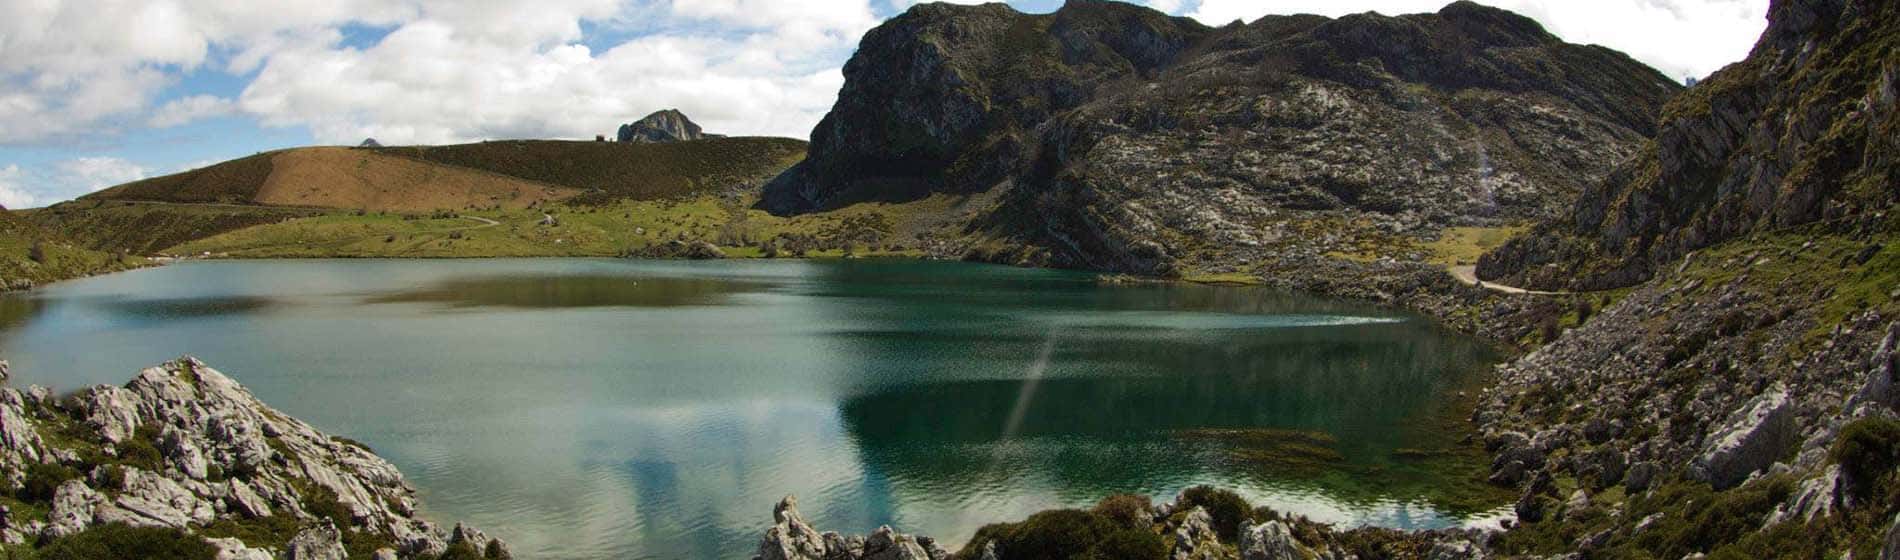 Asturias, Lago Enol